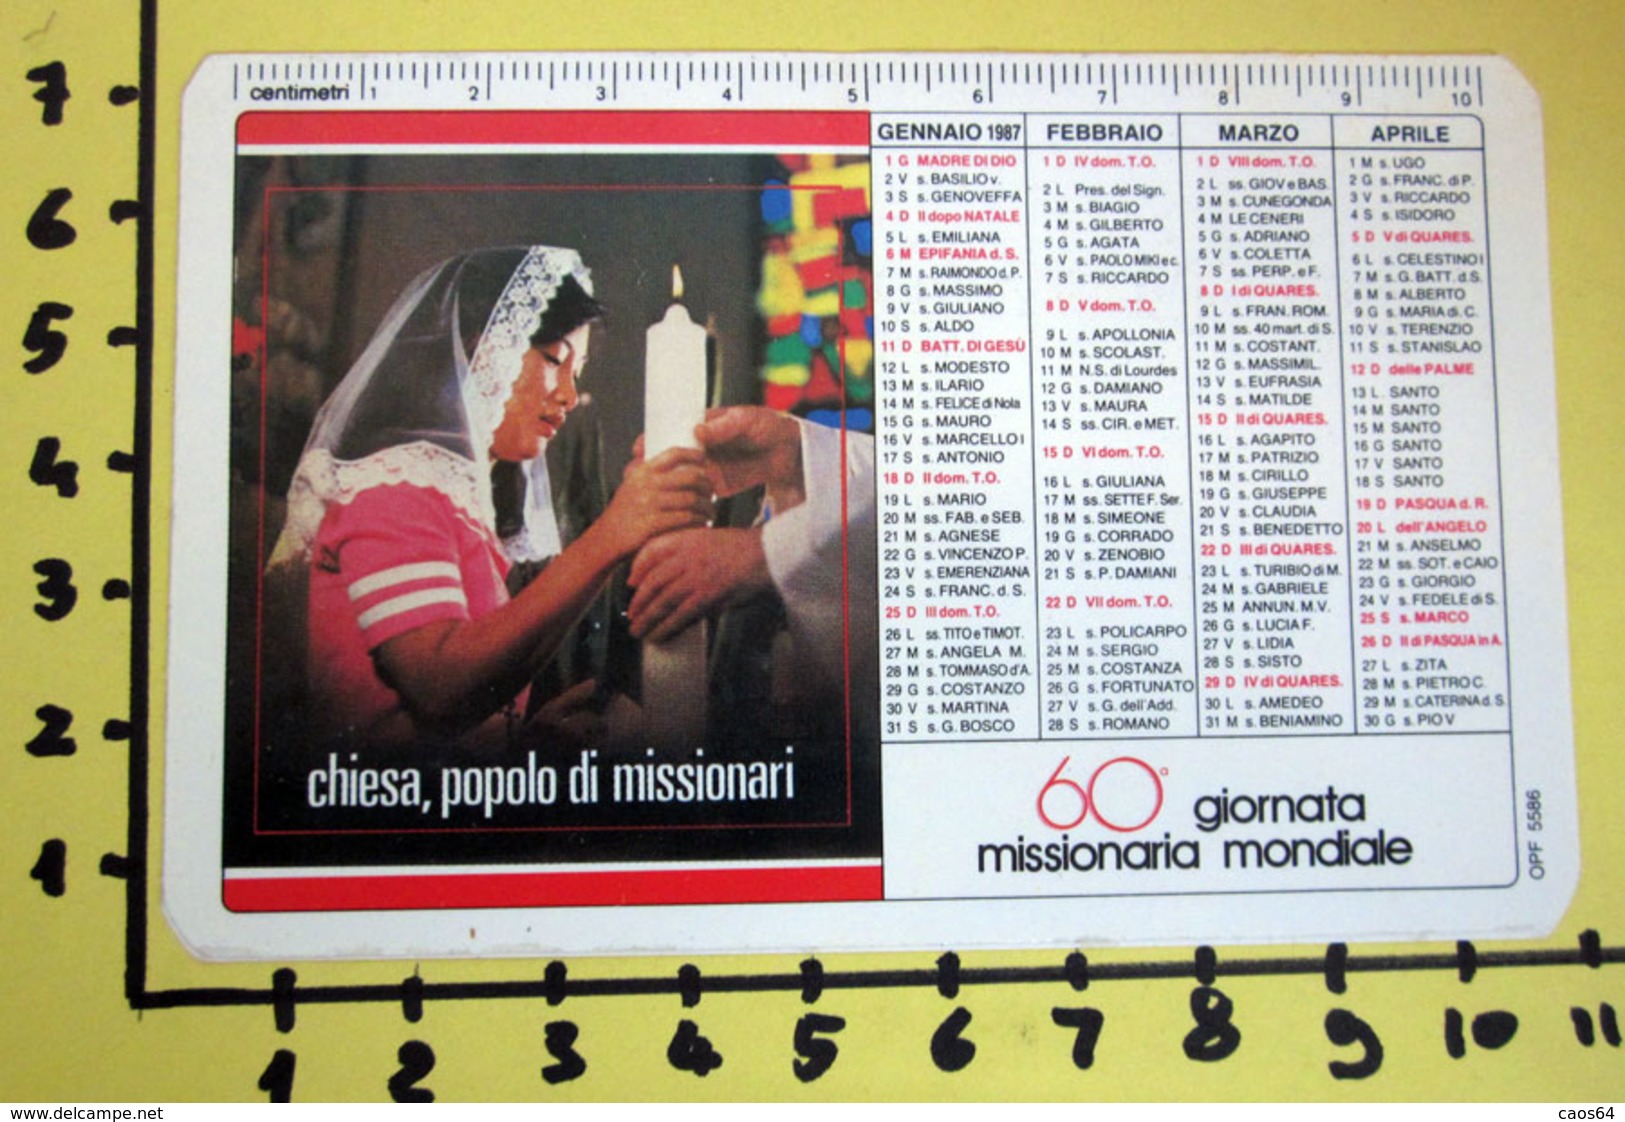 60° GIORNATA MISSIONARIA MONDIALE 1987  CALENDARIO TASCABILE PLASTIFICATO - Big : 1981-90